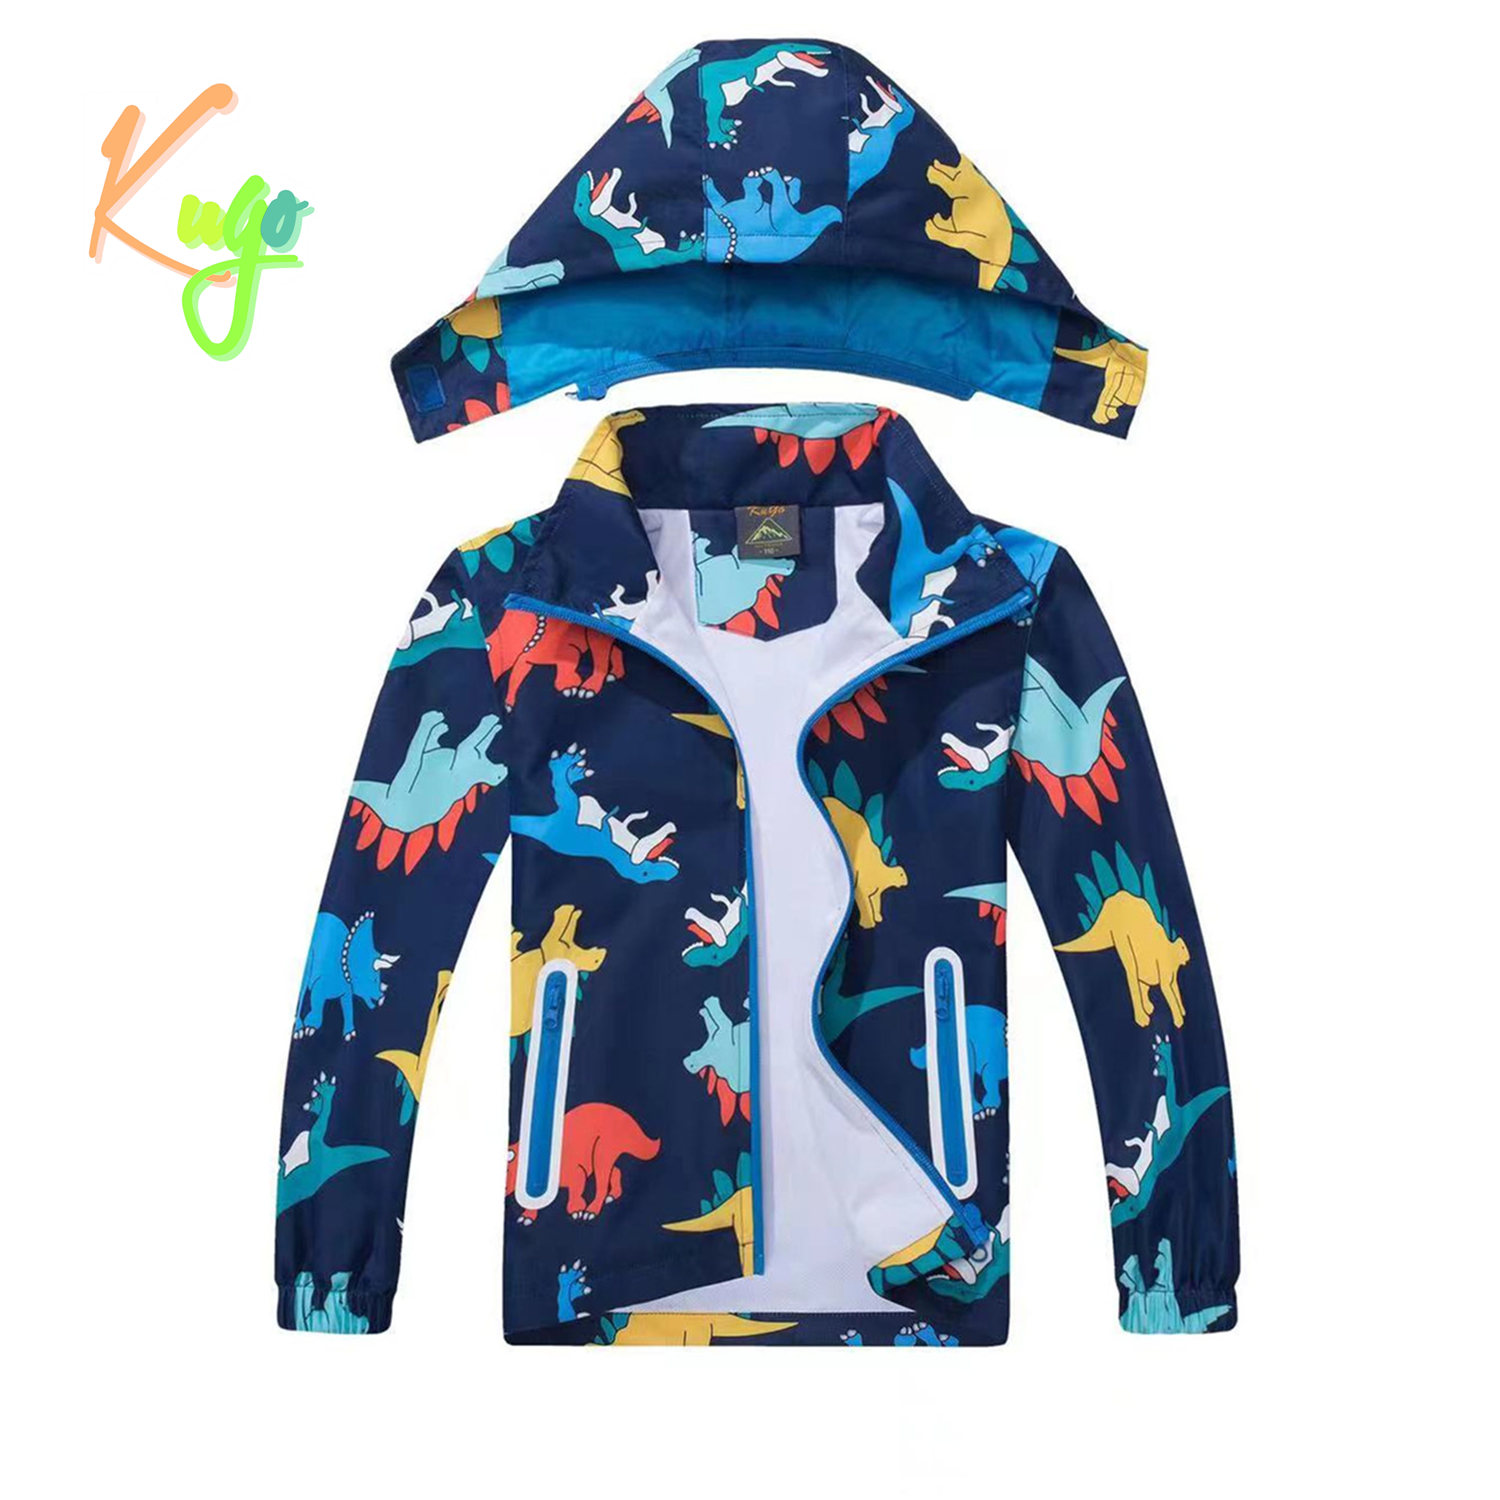 Chlapecká jarní, podzimní bunda - KUGO B2849, tmavě modrá / dinosaurus Barva: Modrá tmavě, Velikost: 128